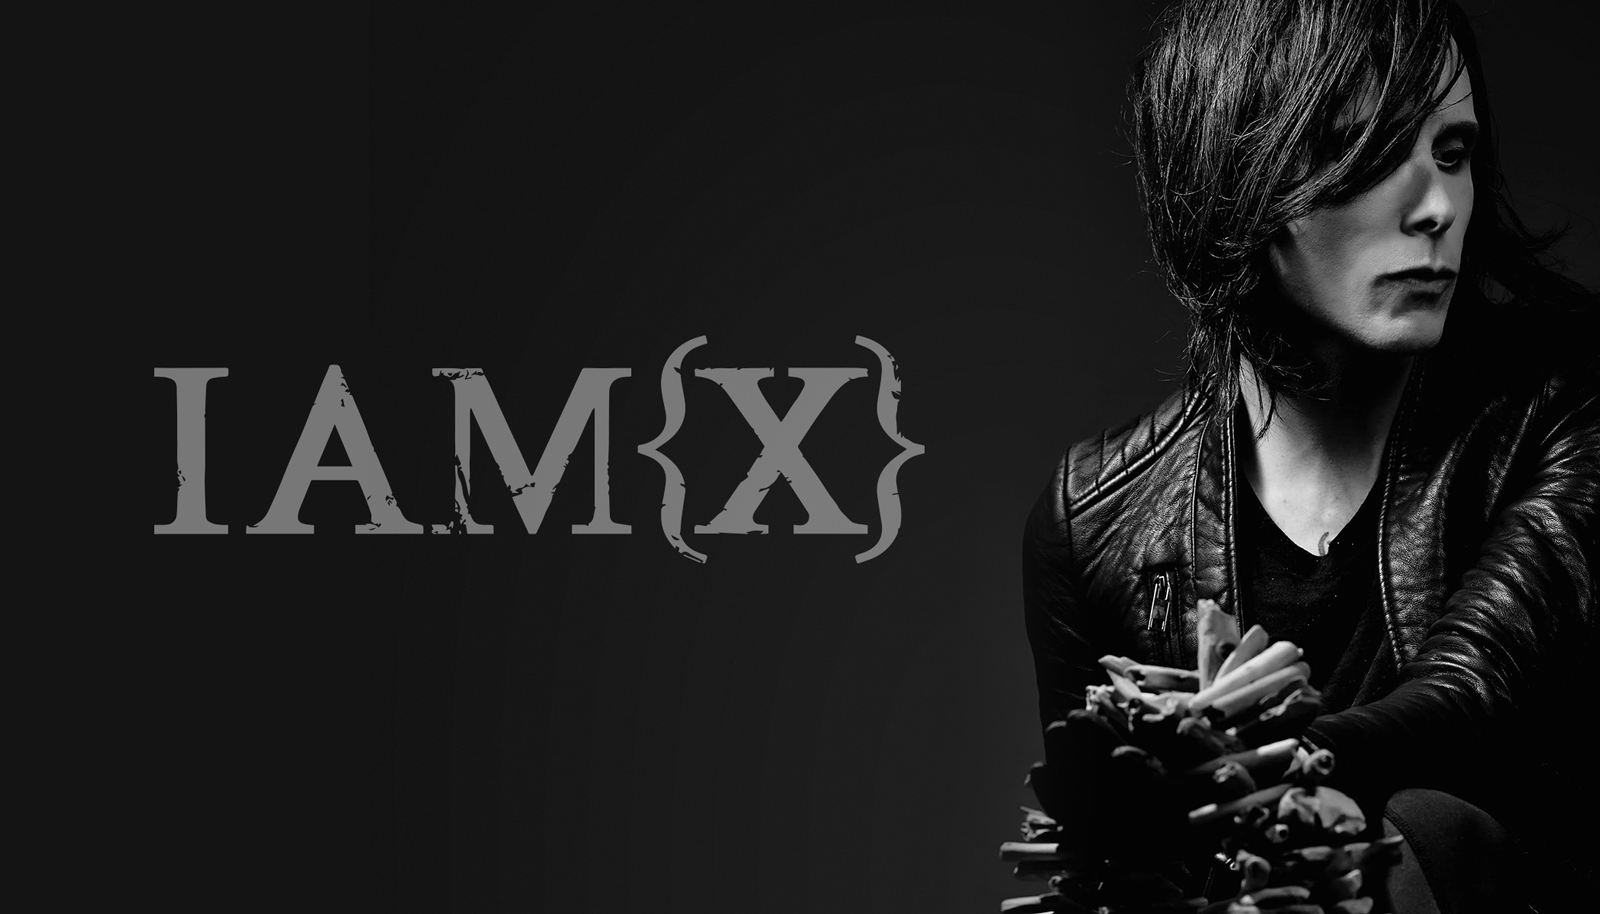 IAMX koncert vasárnap - TOP5 élőben várható dal